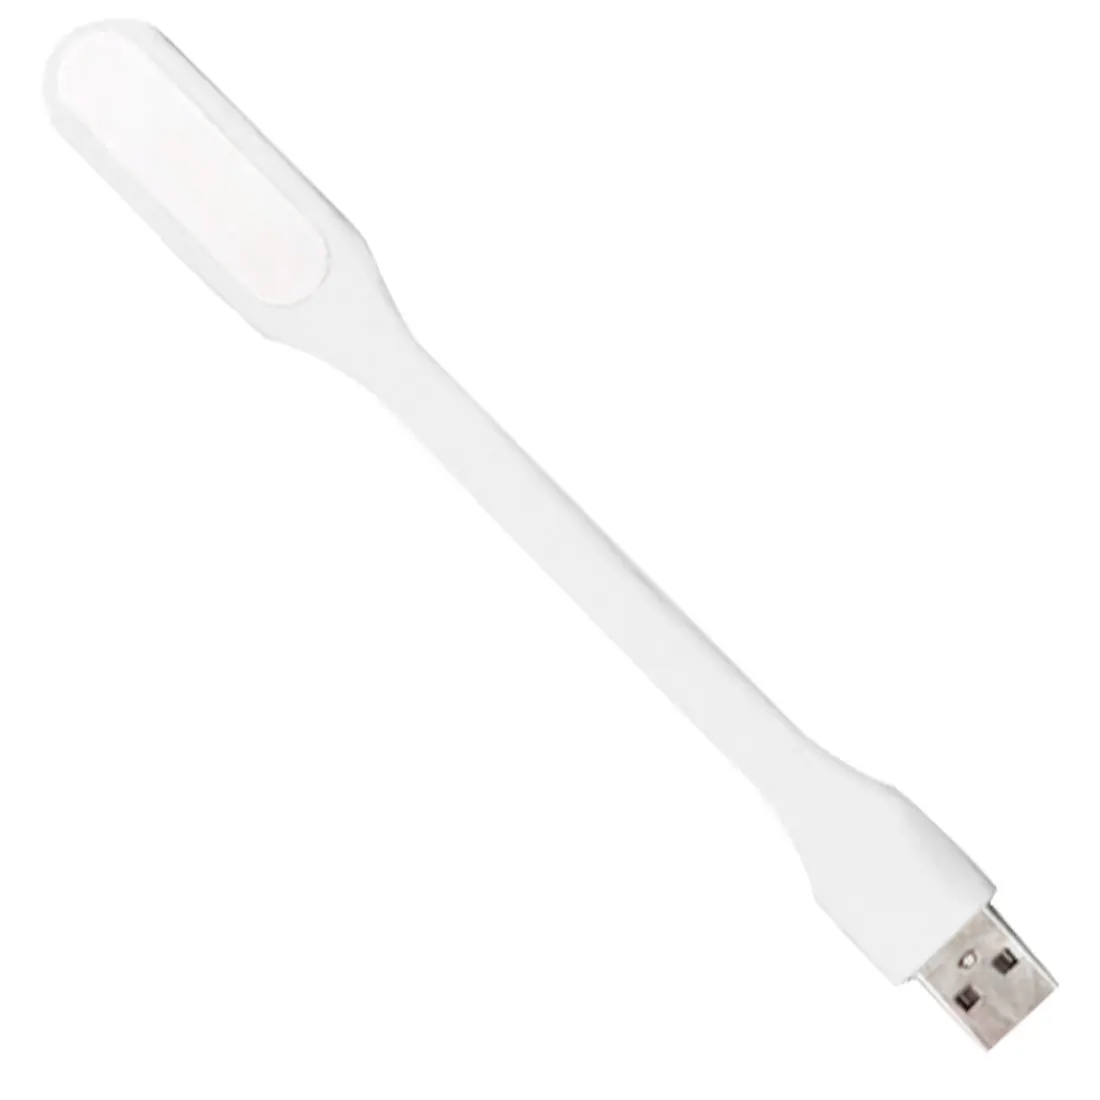 Читальный книжный светильник маленький гибкий USB светодиодный ночник s настольная лампа гаджеты USB глаз ручной светильник для питания ПК ноутбук - Испускаемый цвет: White